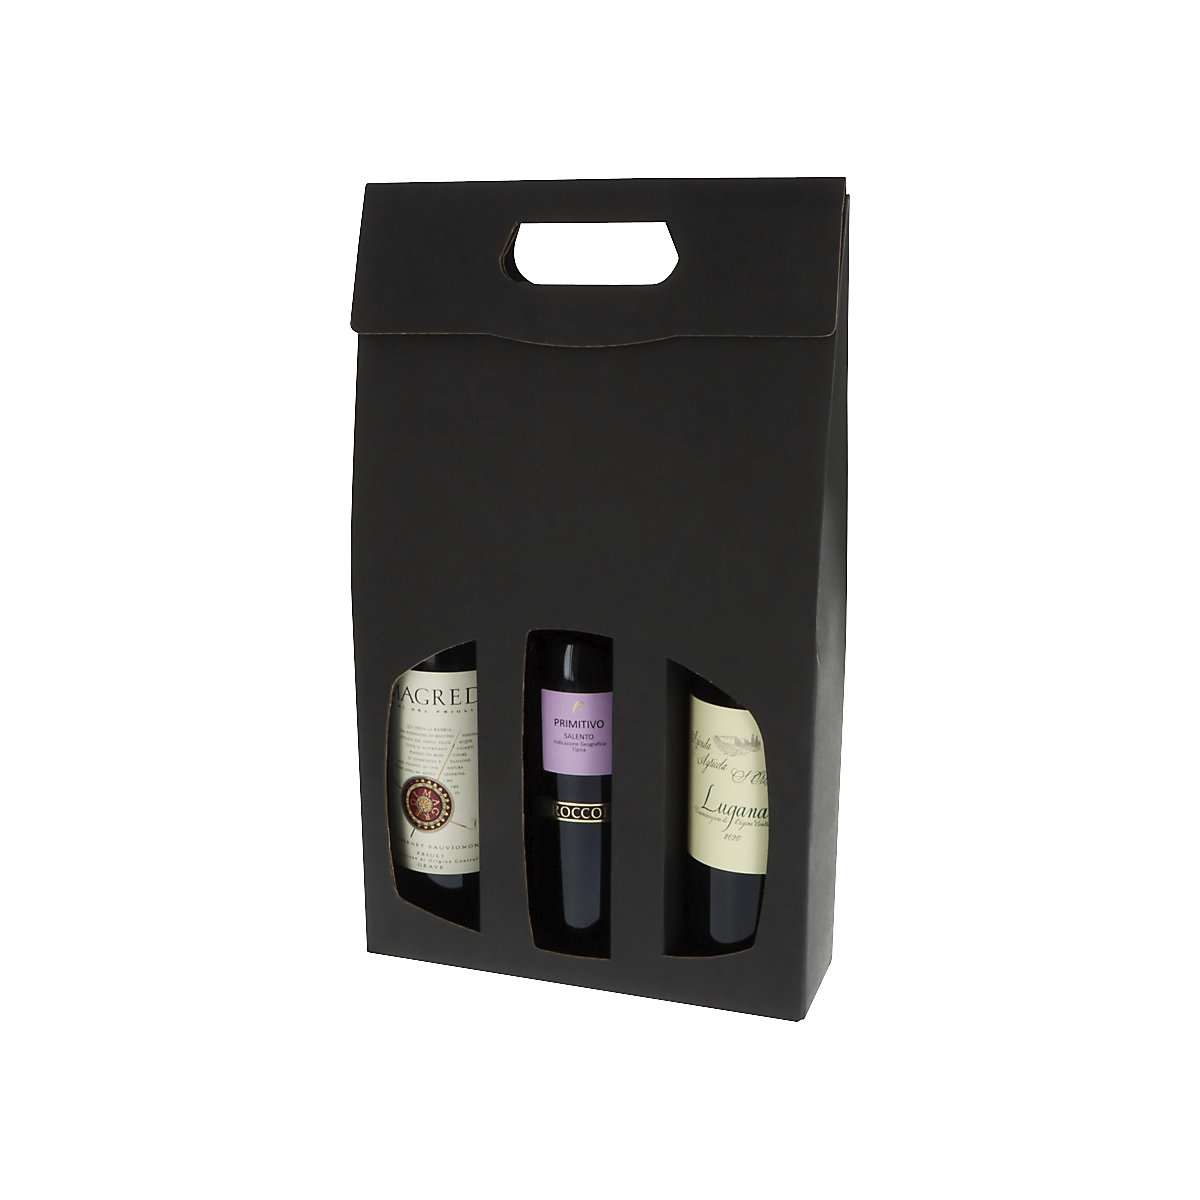 Flaschen-Geschenktragekarton mit Fenster, Innen-LxBxH 365 x 270 x 90 mm, schwarz, ab 8 Stk